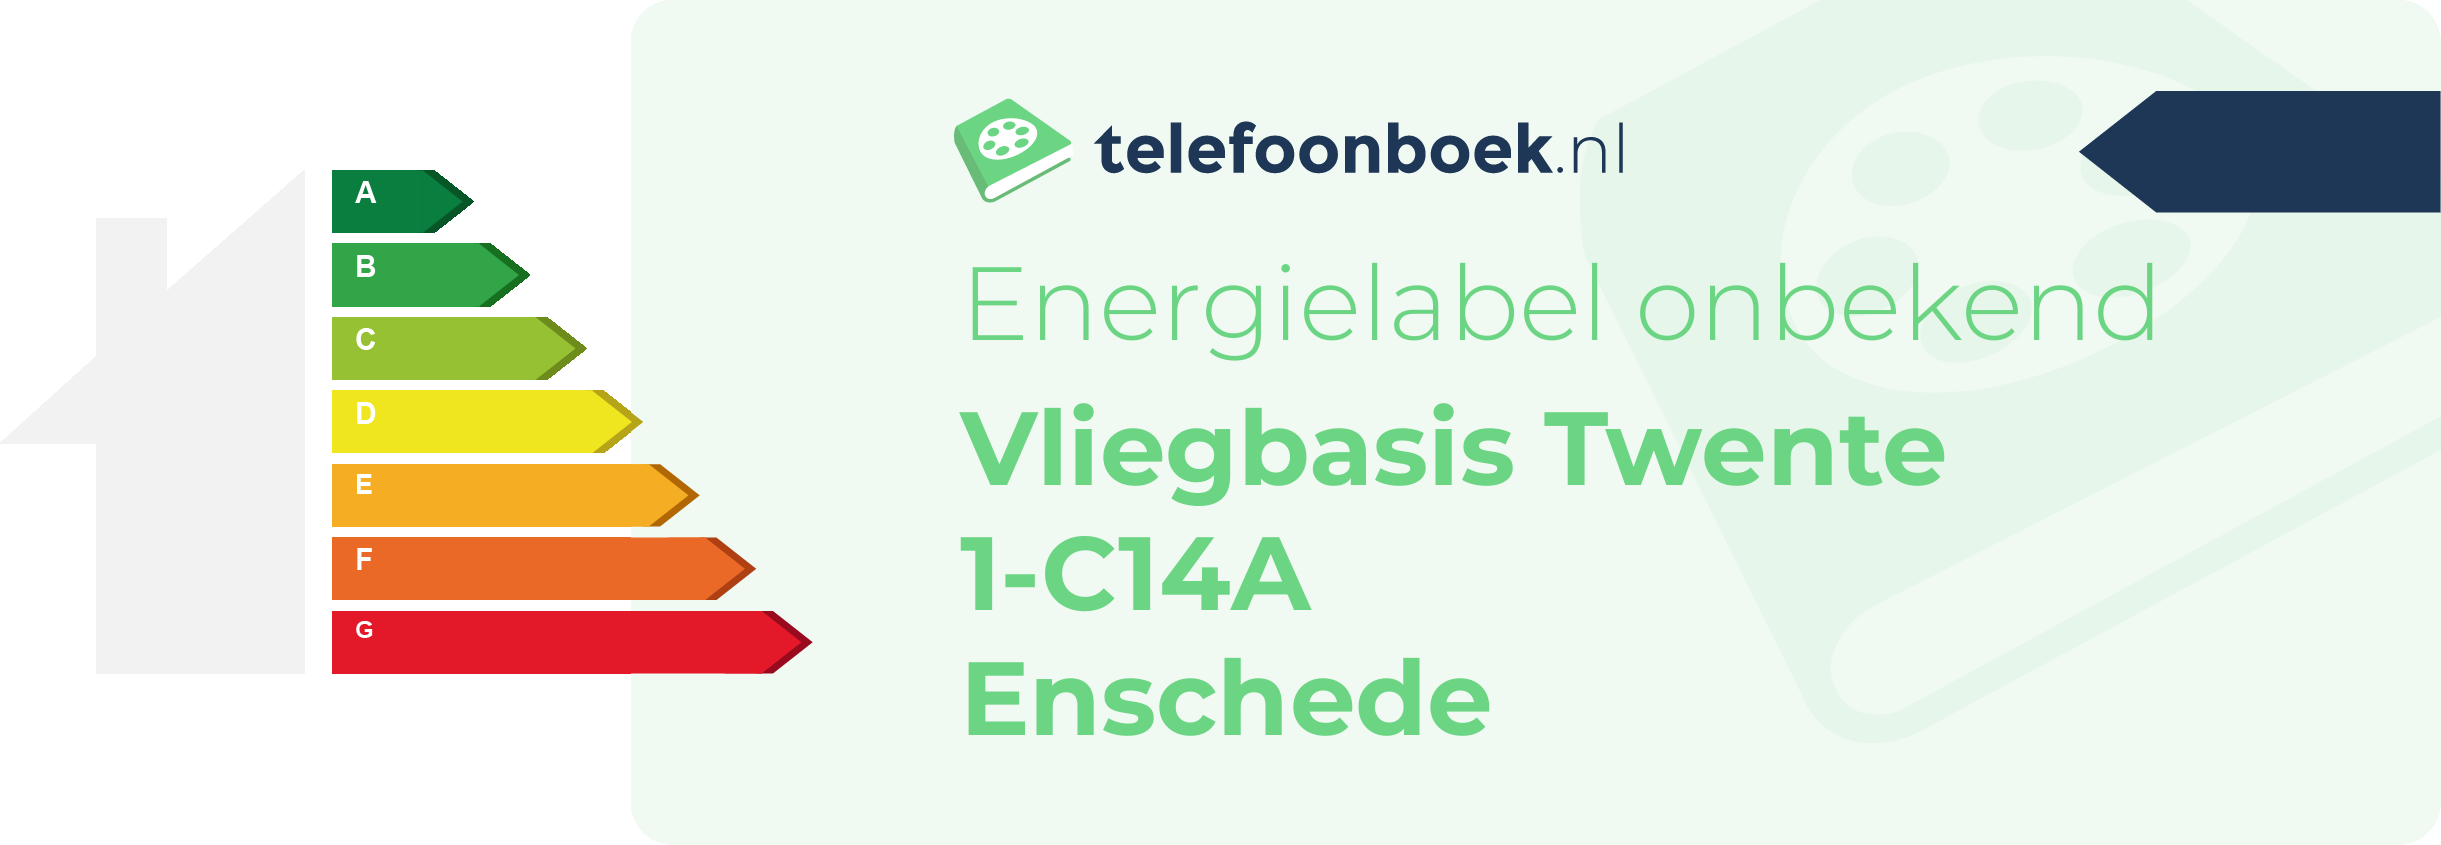 Energielabel Vliegbasis Twente 1-C14A Enschede